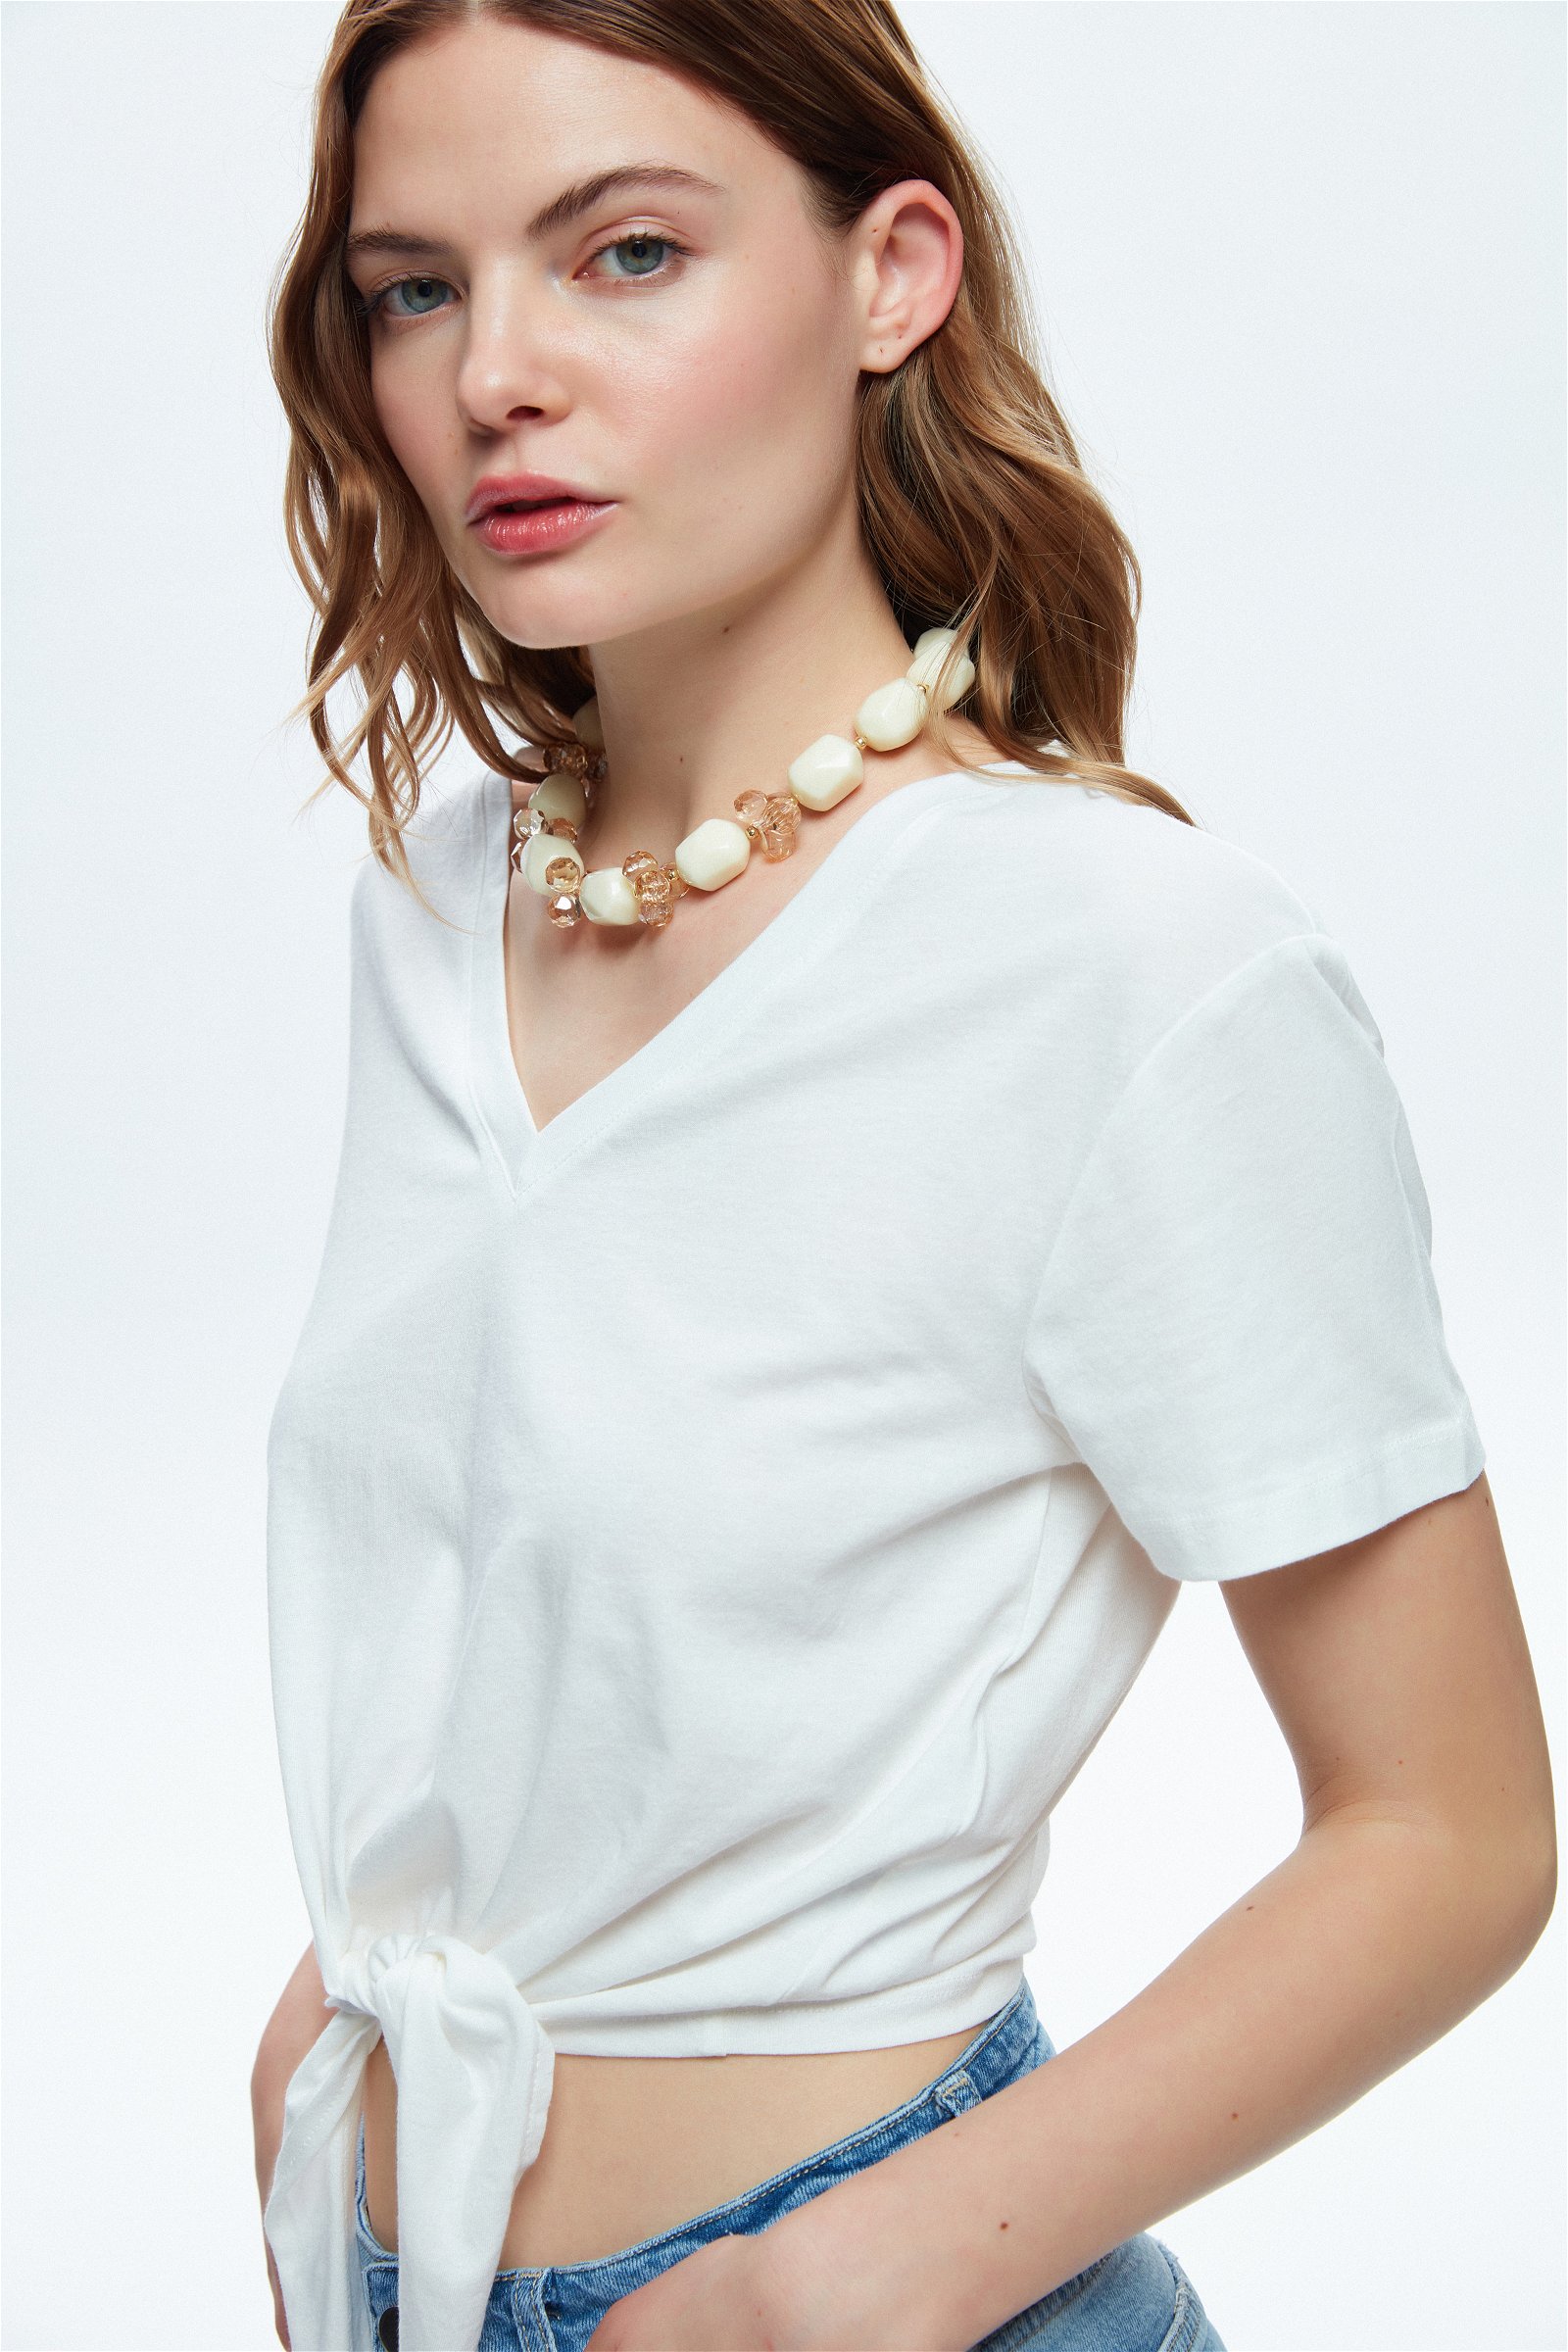 Kadın Tişört, Baskılı & Crop Tişört Modelleri | adL